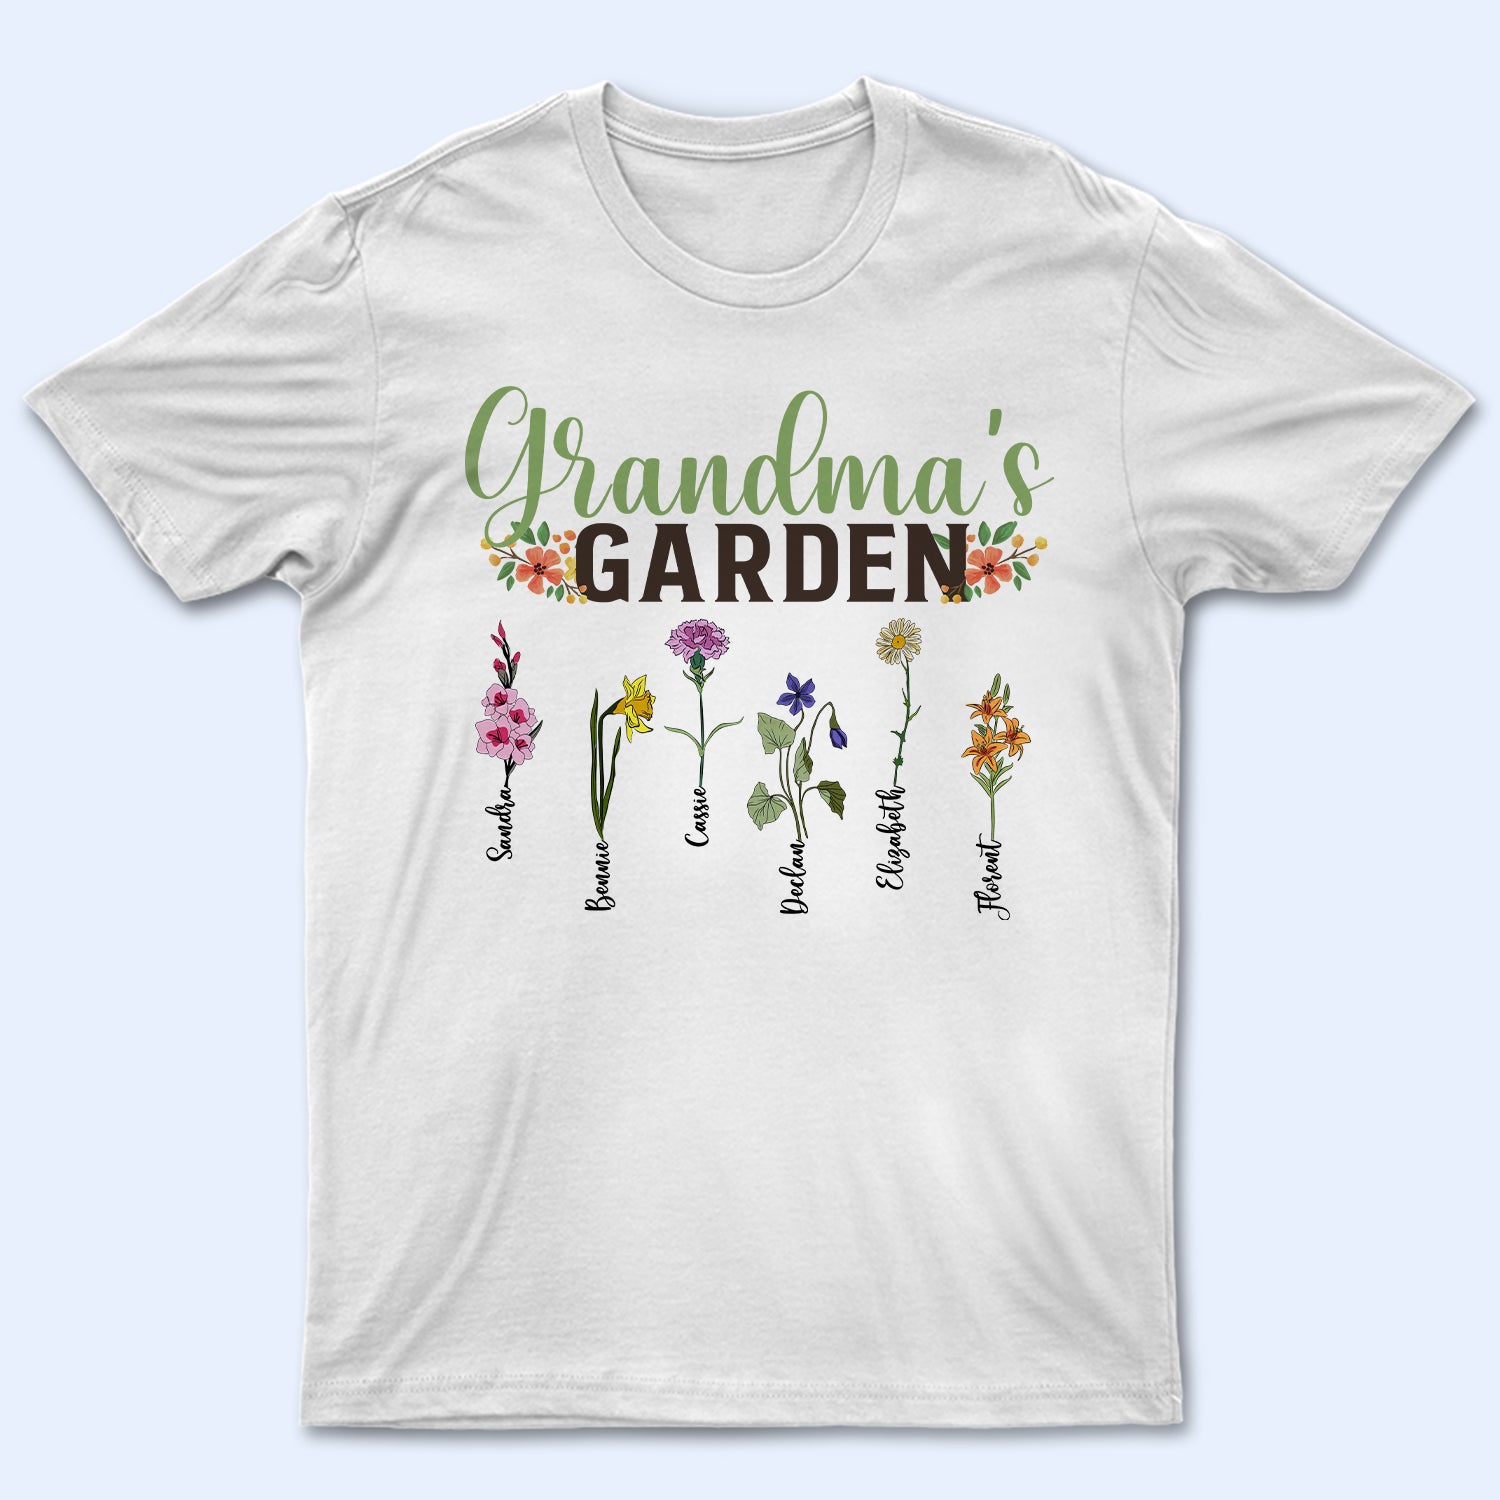 Grandma Garden - Birthday, Loving Gift For Mother, Grandma, Grandmother, Gardening - Personalized Custom T Shirt